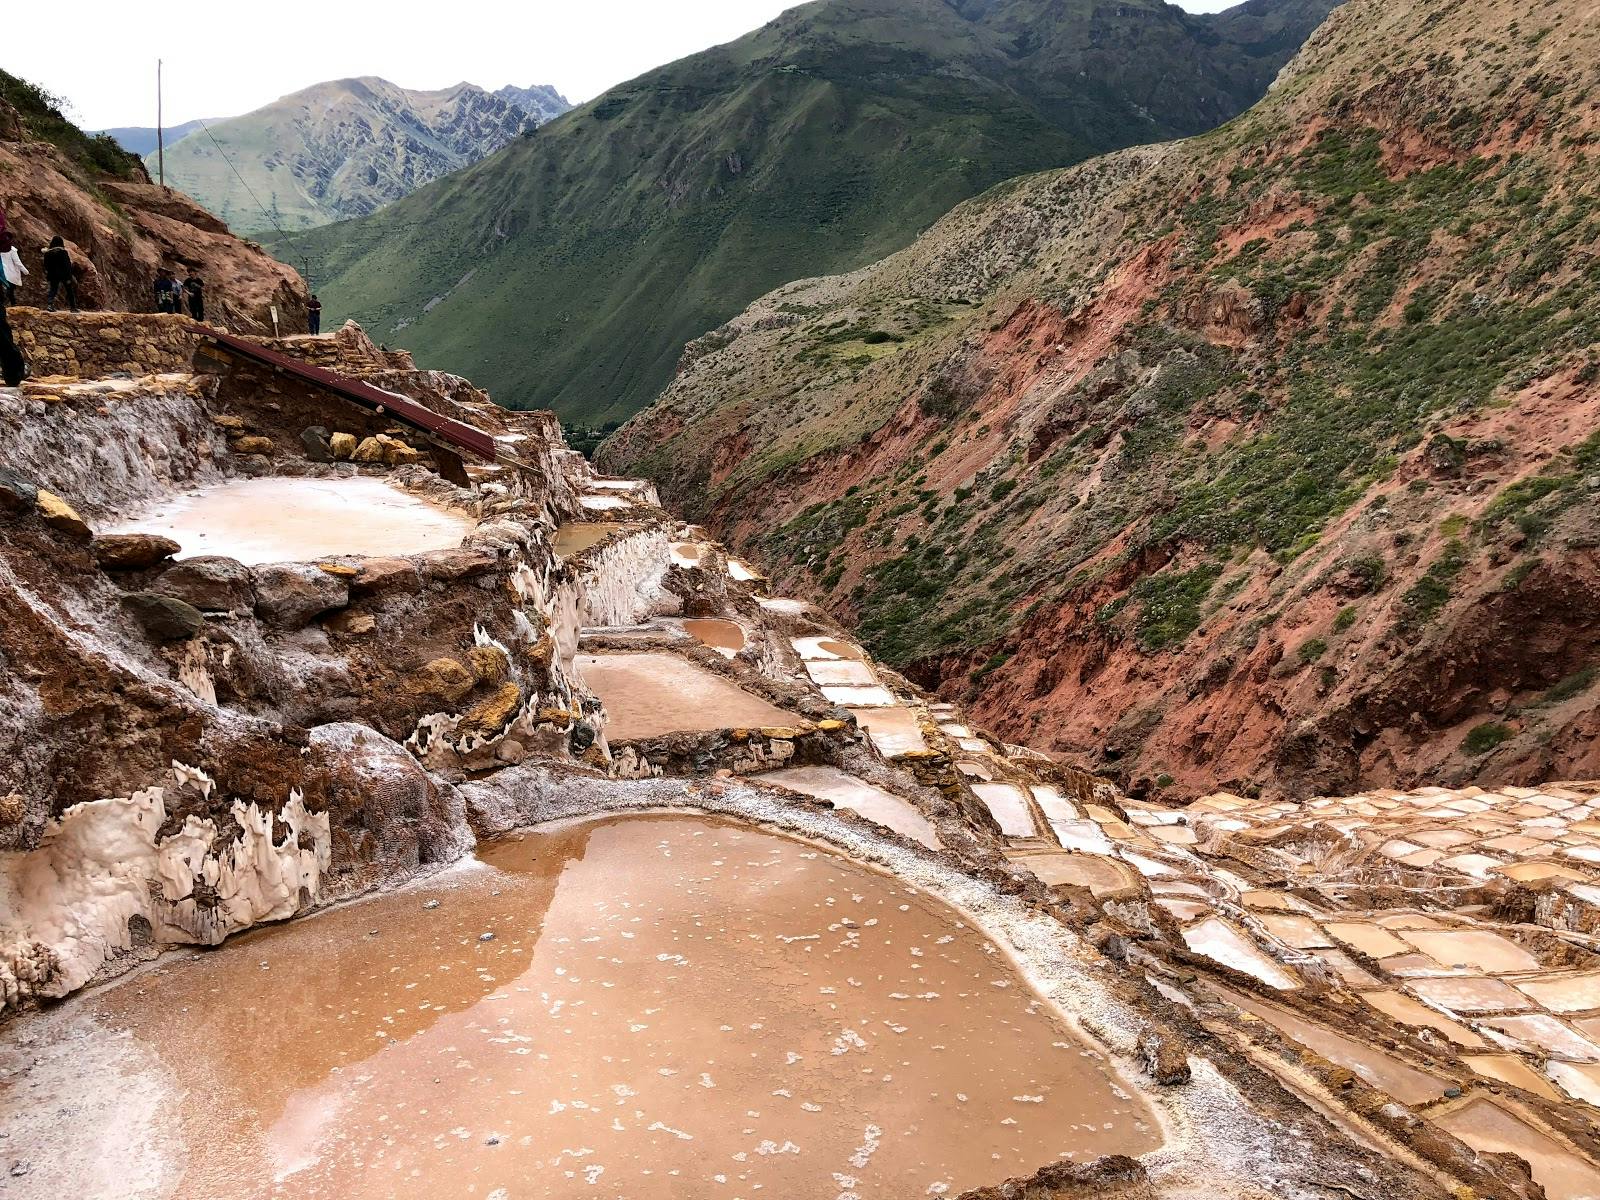 Image - Maras Salt Mines